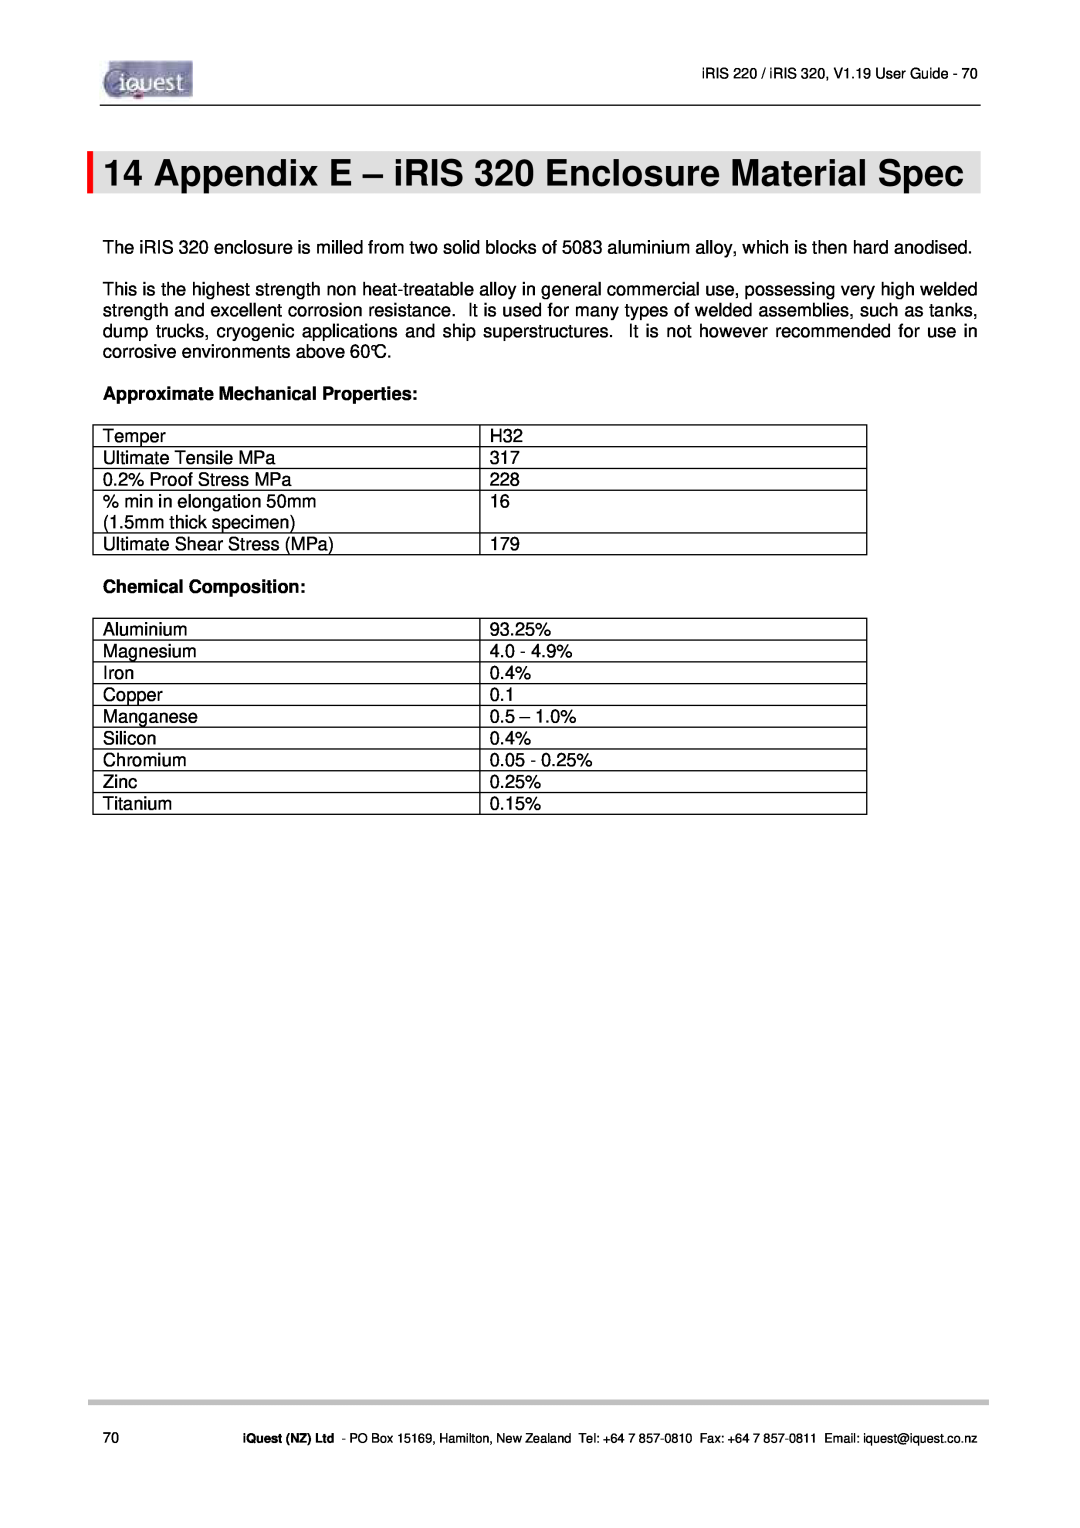 Optiquest manual Appendix E - iRIS 320 Enclosure Material Spec, Approximate Mechanical Properties, Chemical Composition 